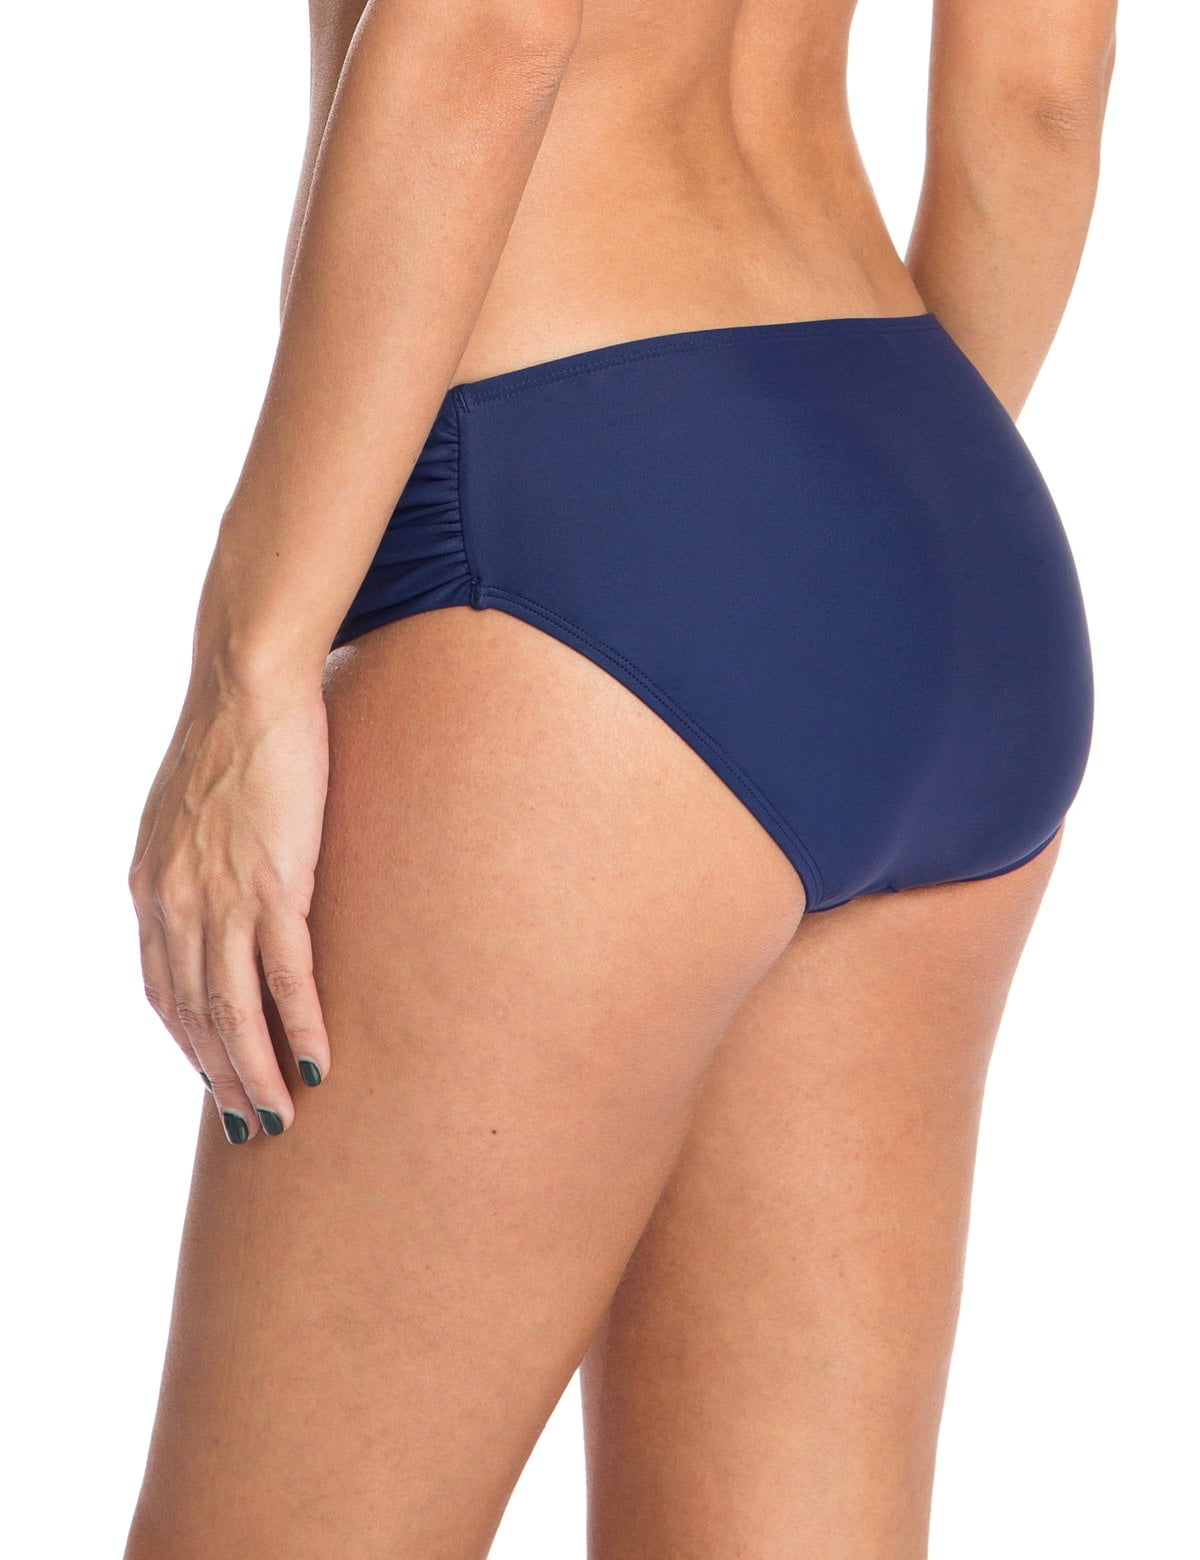 Relleciga Women's Full Coverage Swim Bottoms Mid Rise Ruched Sides Bikini  Bottom 